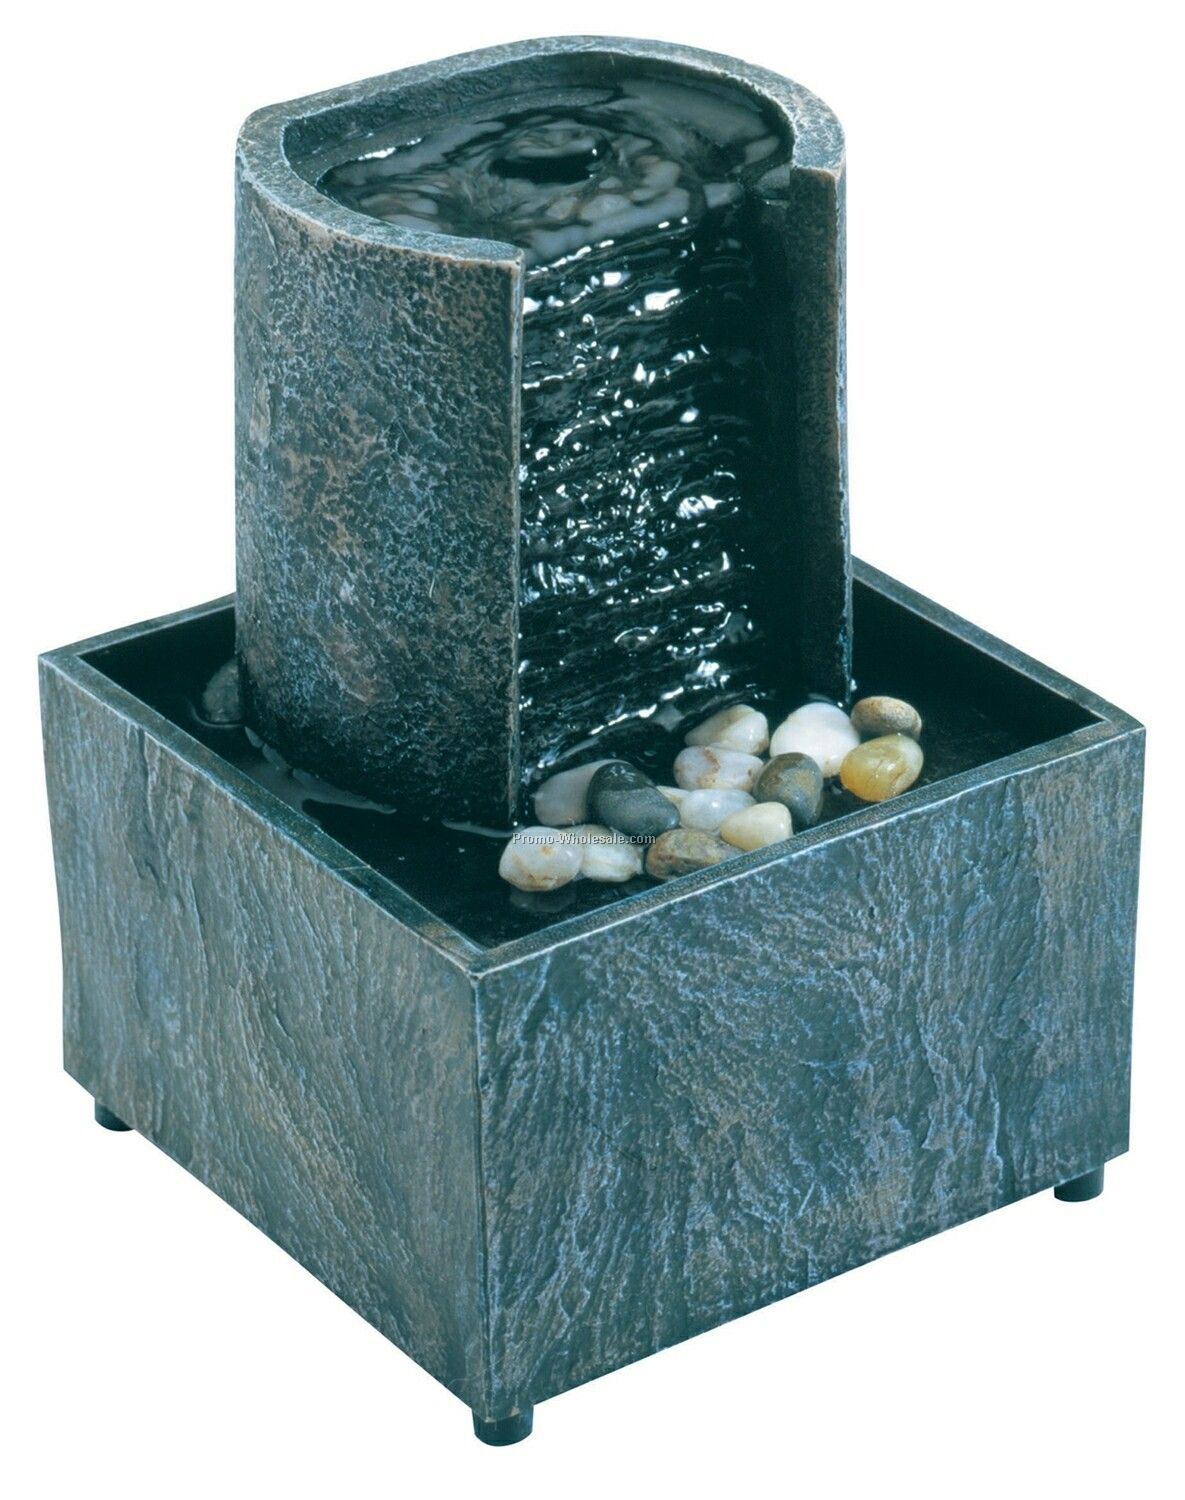 Sapoporo Stone Fountain